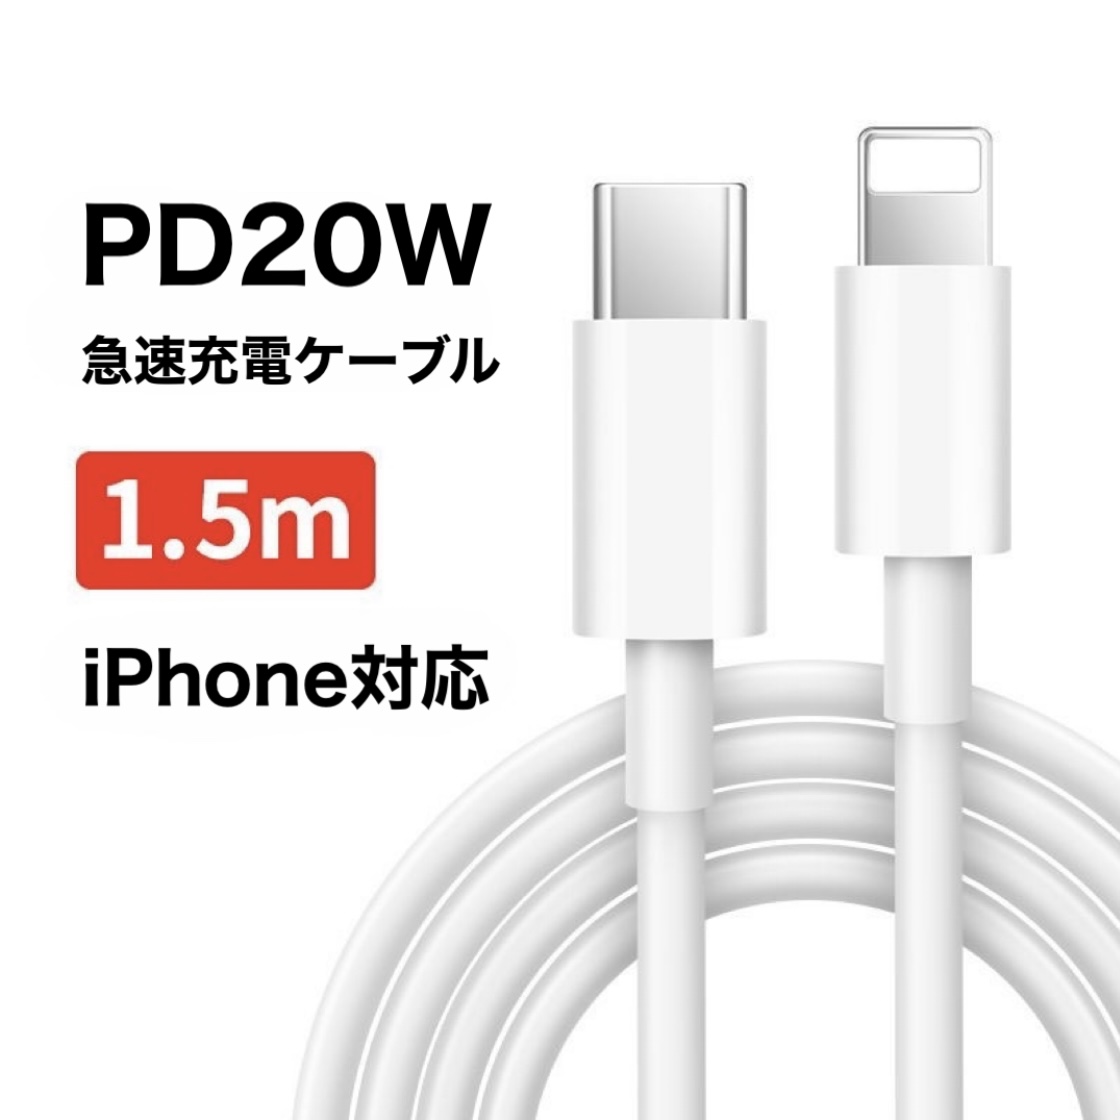 ライトニングケーブル iPhone 充電ケーブル タイプC 2m 1m 1.5m PD ケーブル 急速充電 20W iPhone iPad Type-C Lightning